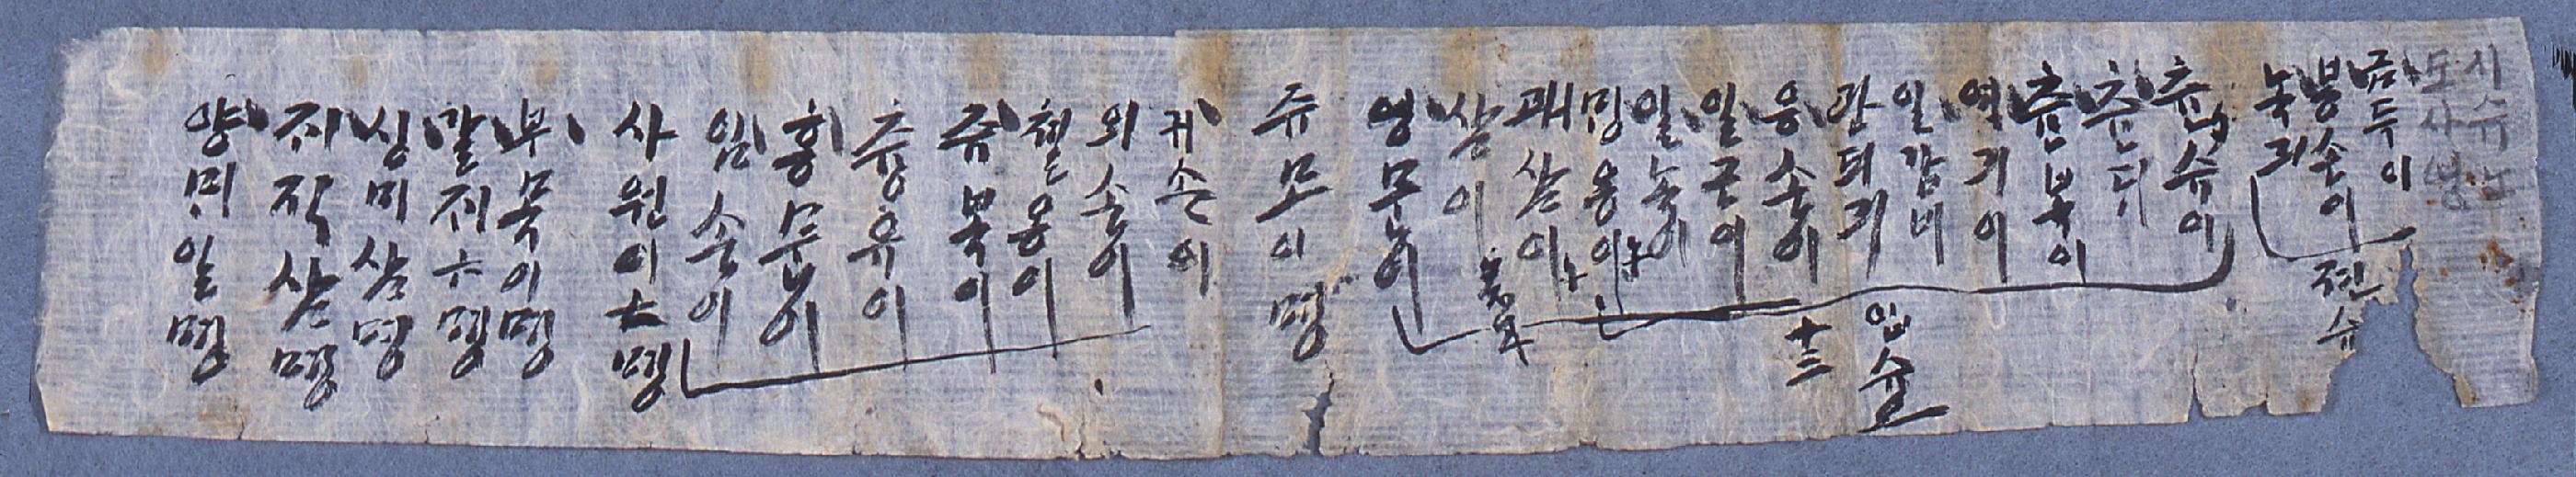 도산서원 노비의 명단을 한글로 기재한 문서